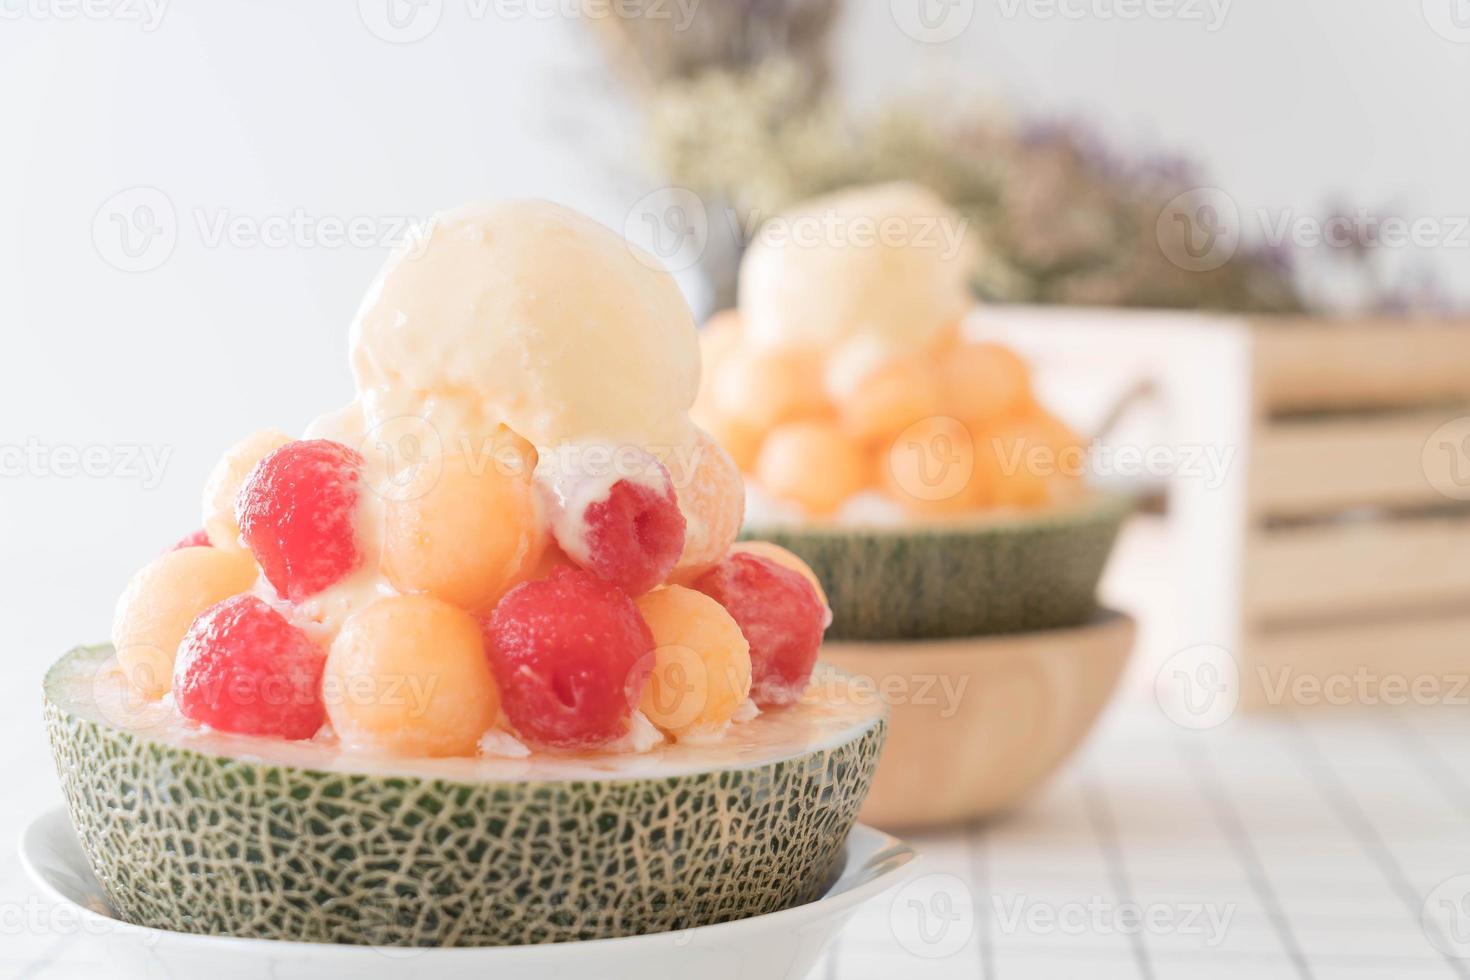 melon glacé bingsu, célèbre glace coréenne photo